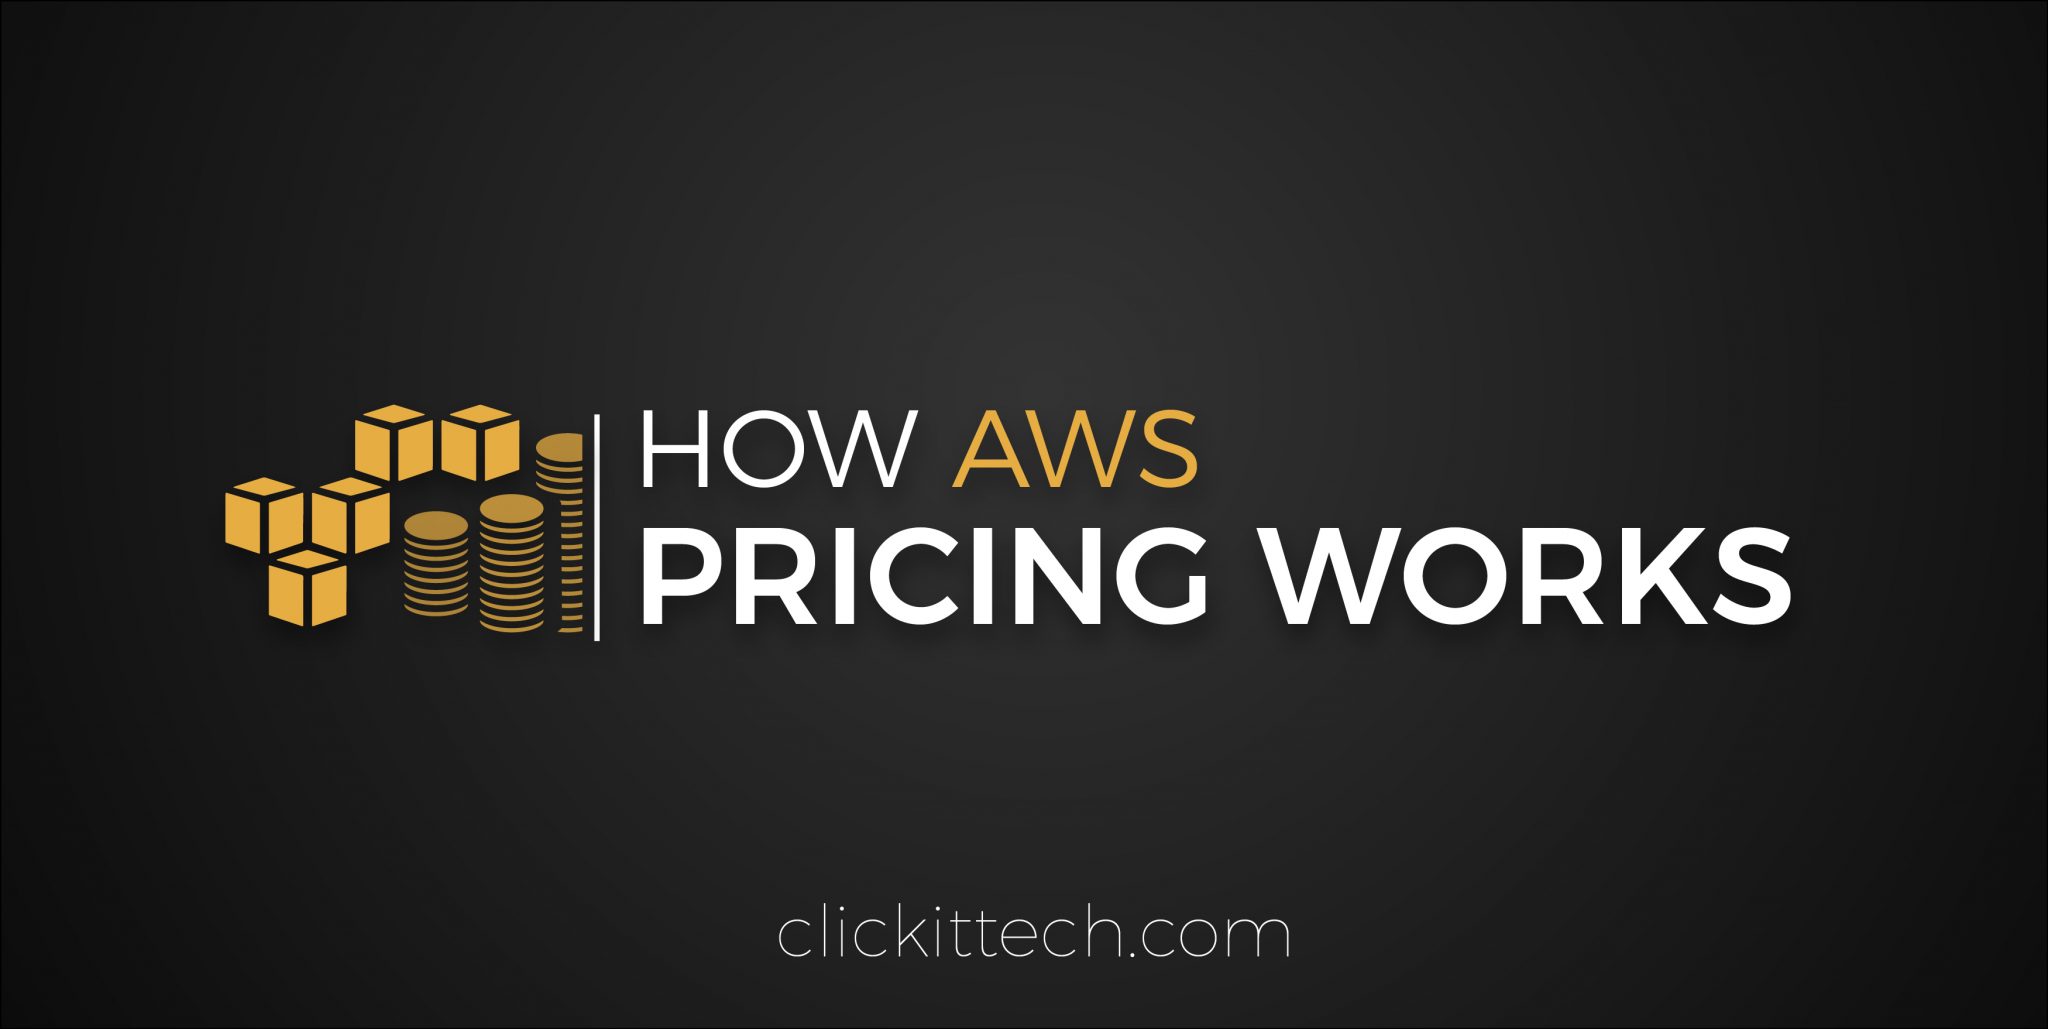 AWS pricing